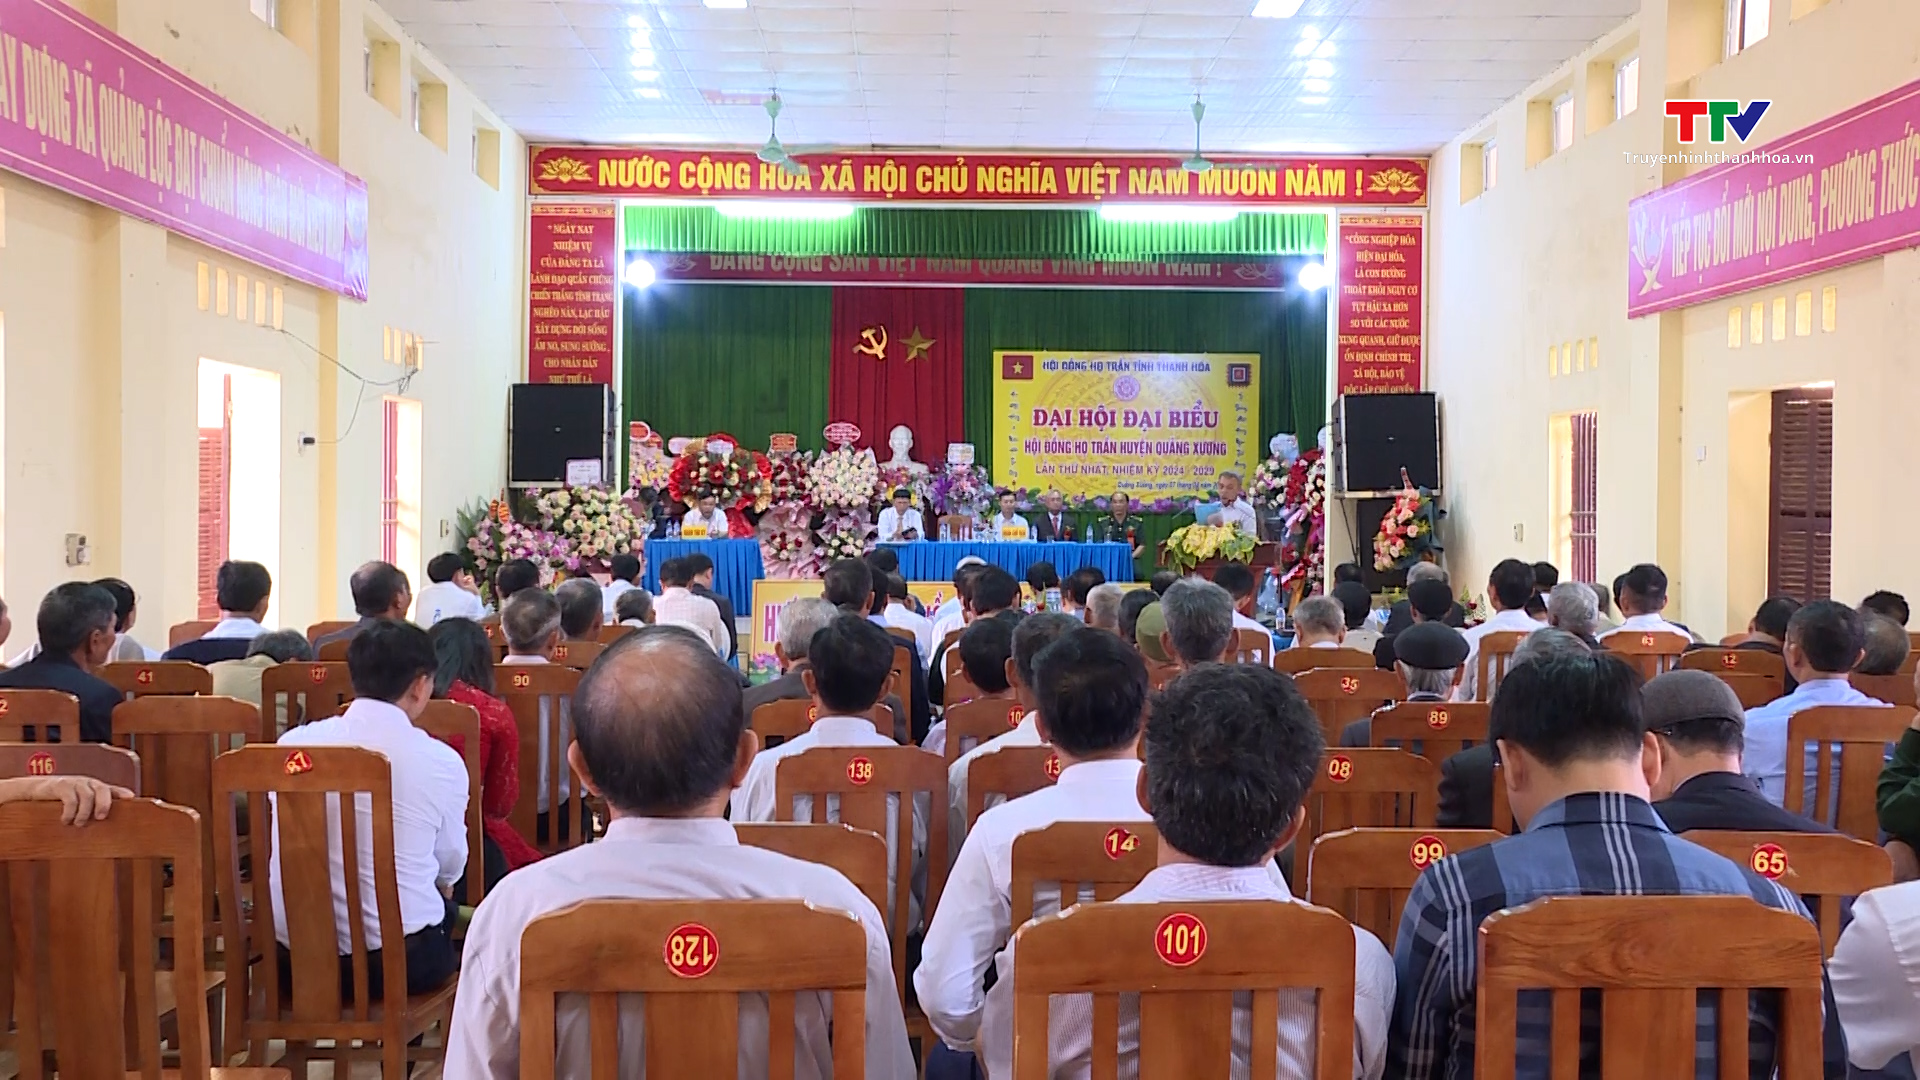 Đại hội Đại biểu họ Trần huyện Quảng Xương nhiệm kỳ 2024 - 2029- Ảnh 1.